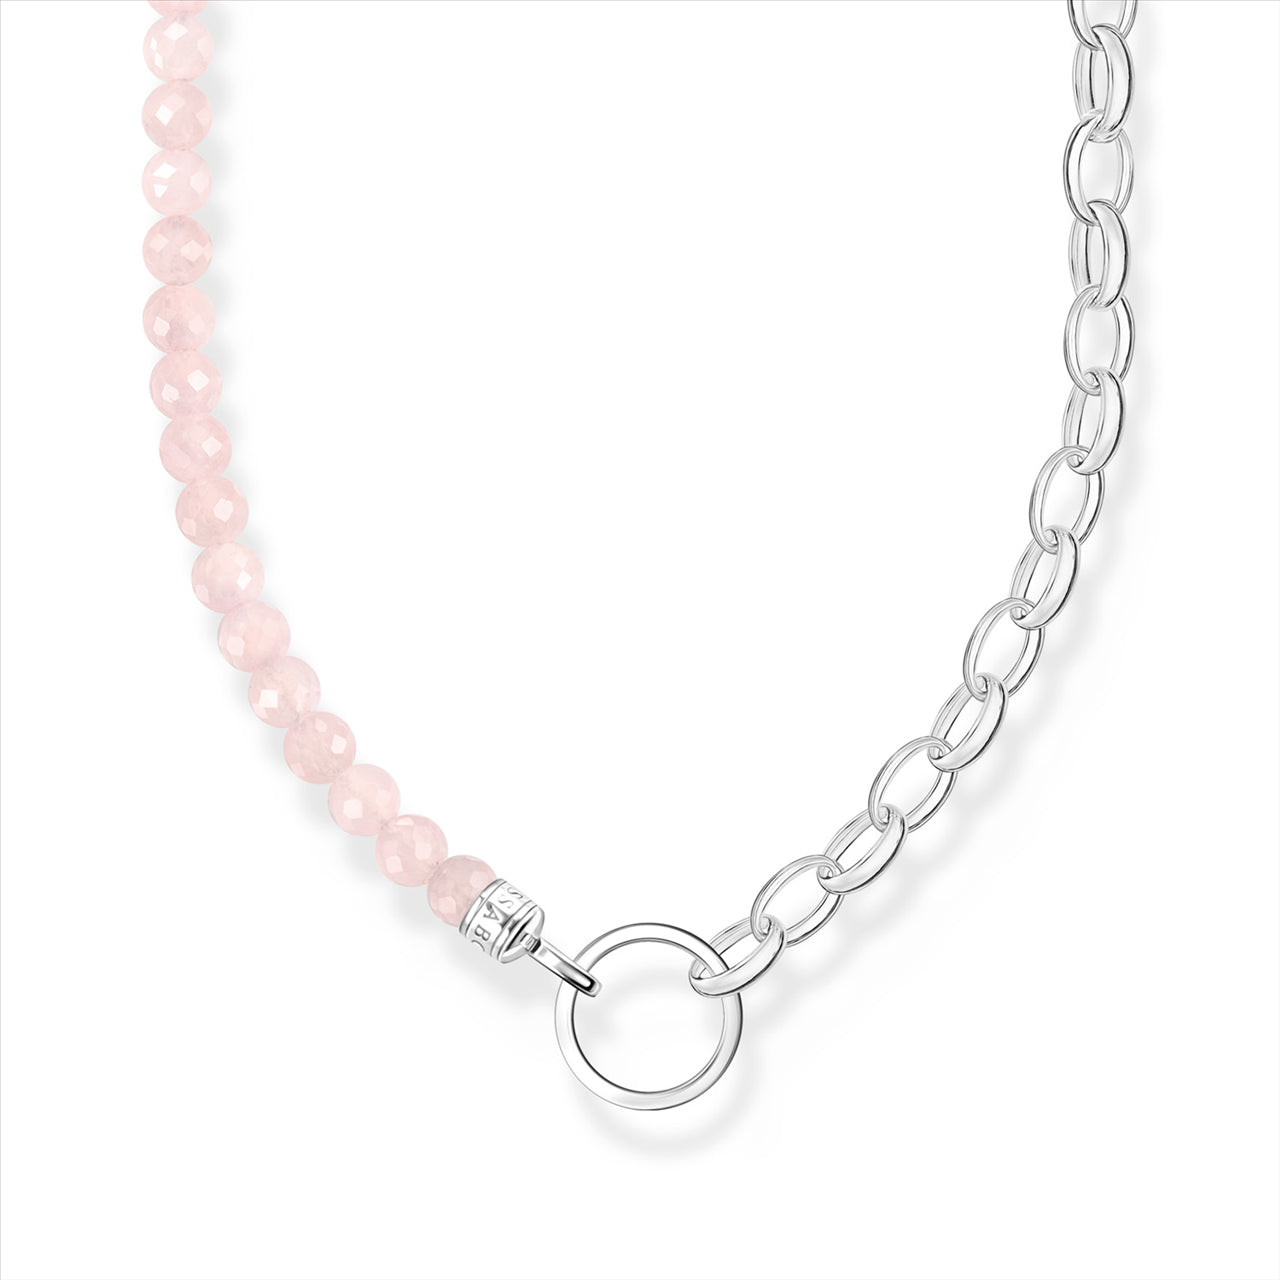 Thomas Sabo Charm Club Rose Quartz & Belcher Chain Link Necklace.